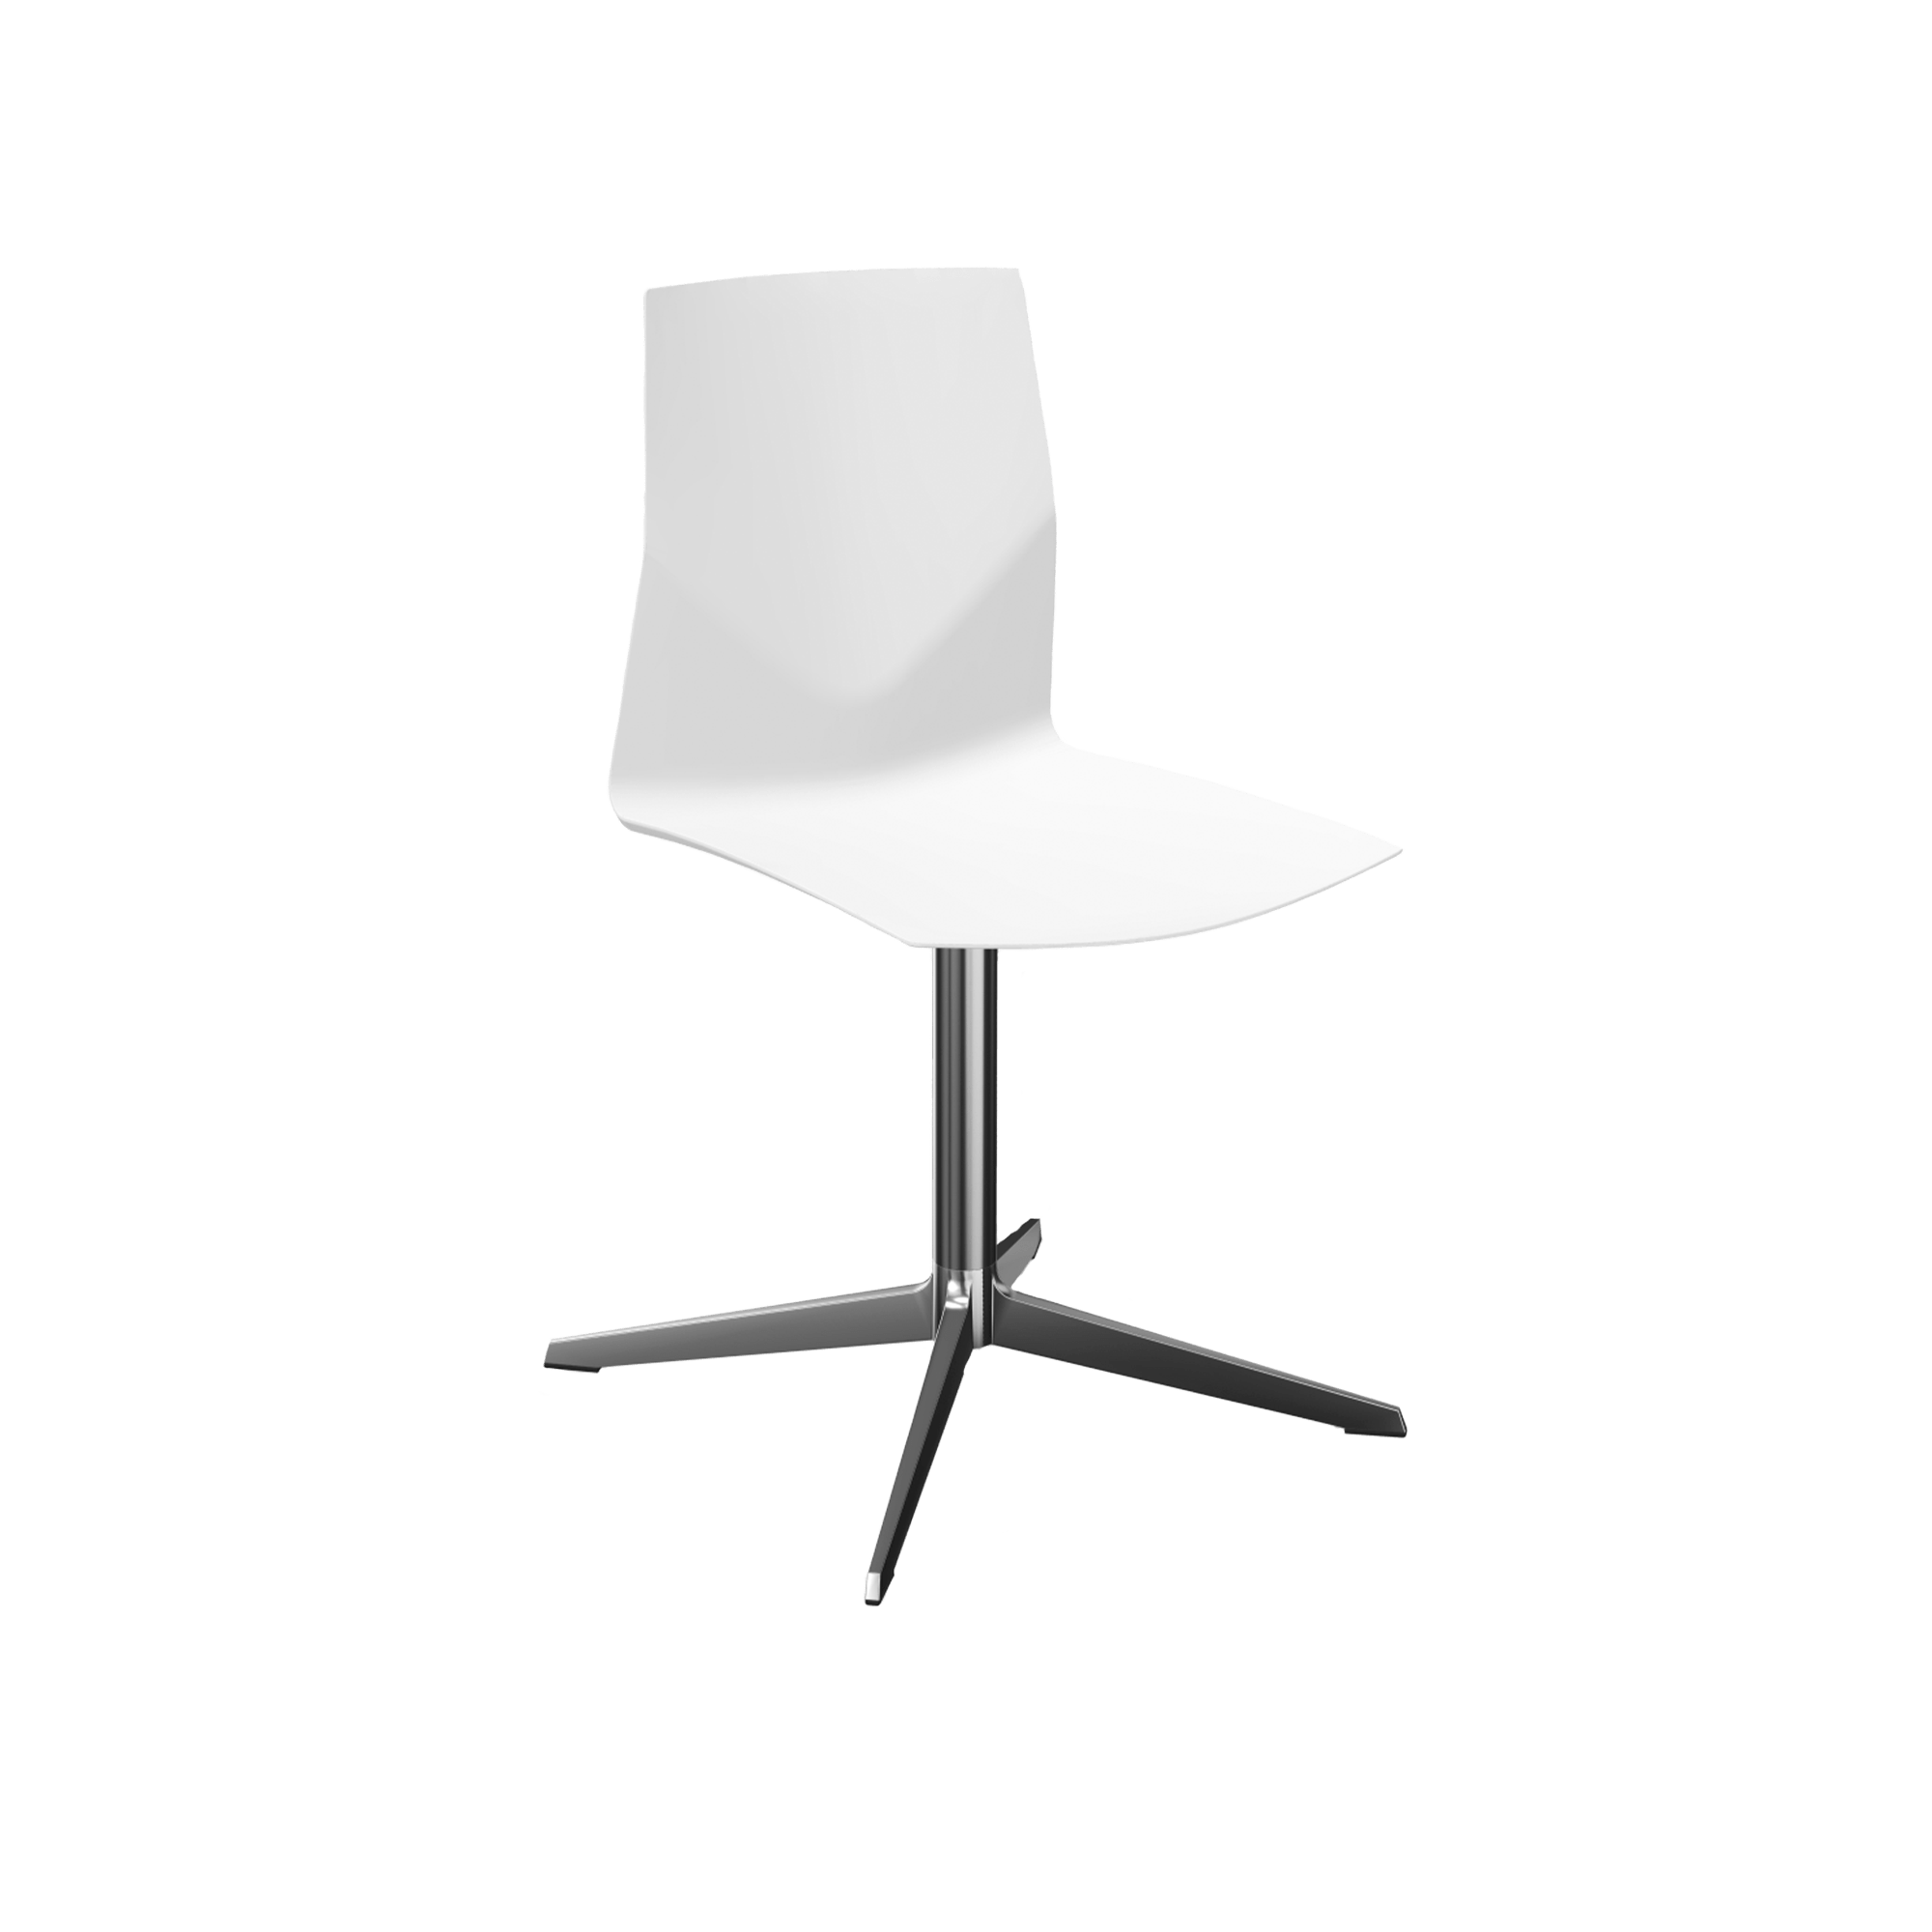 White swivel chair with a chrome pedestal leg